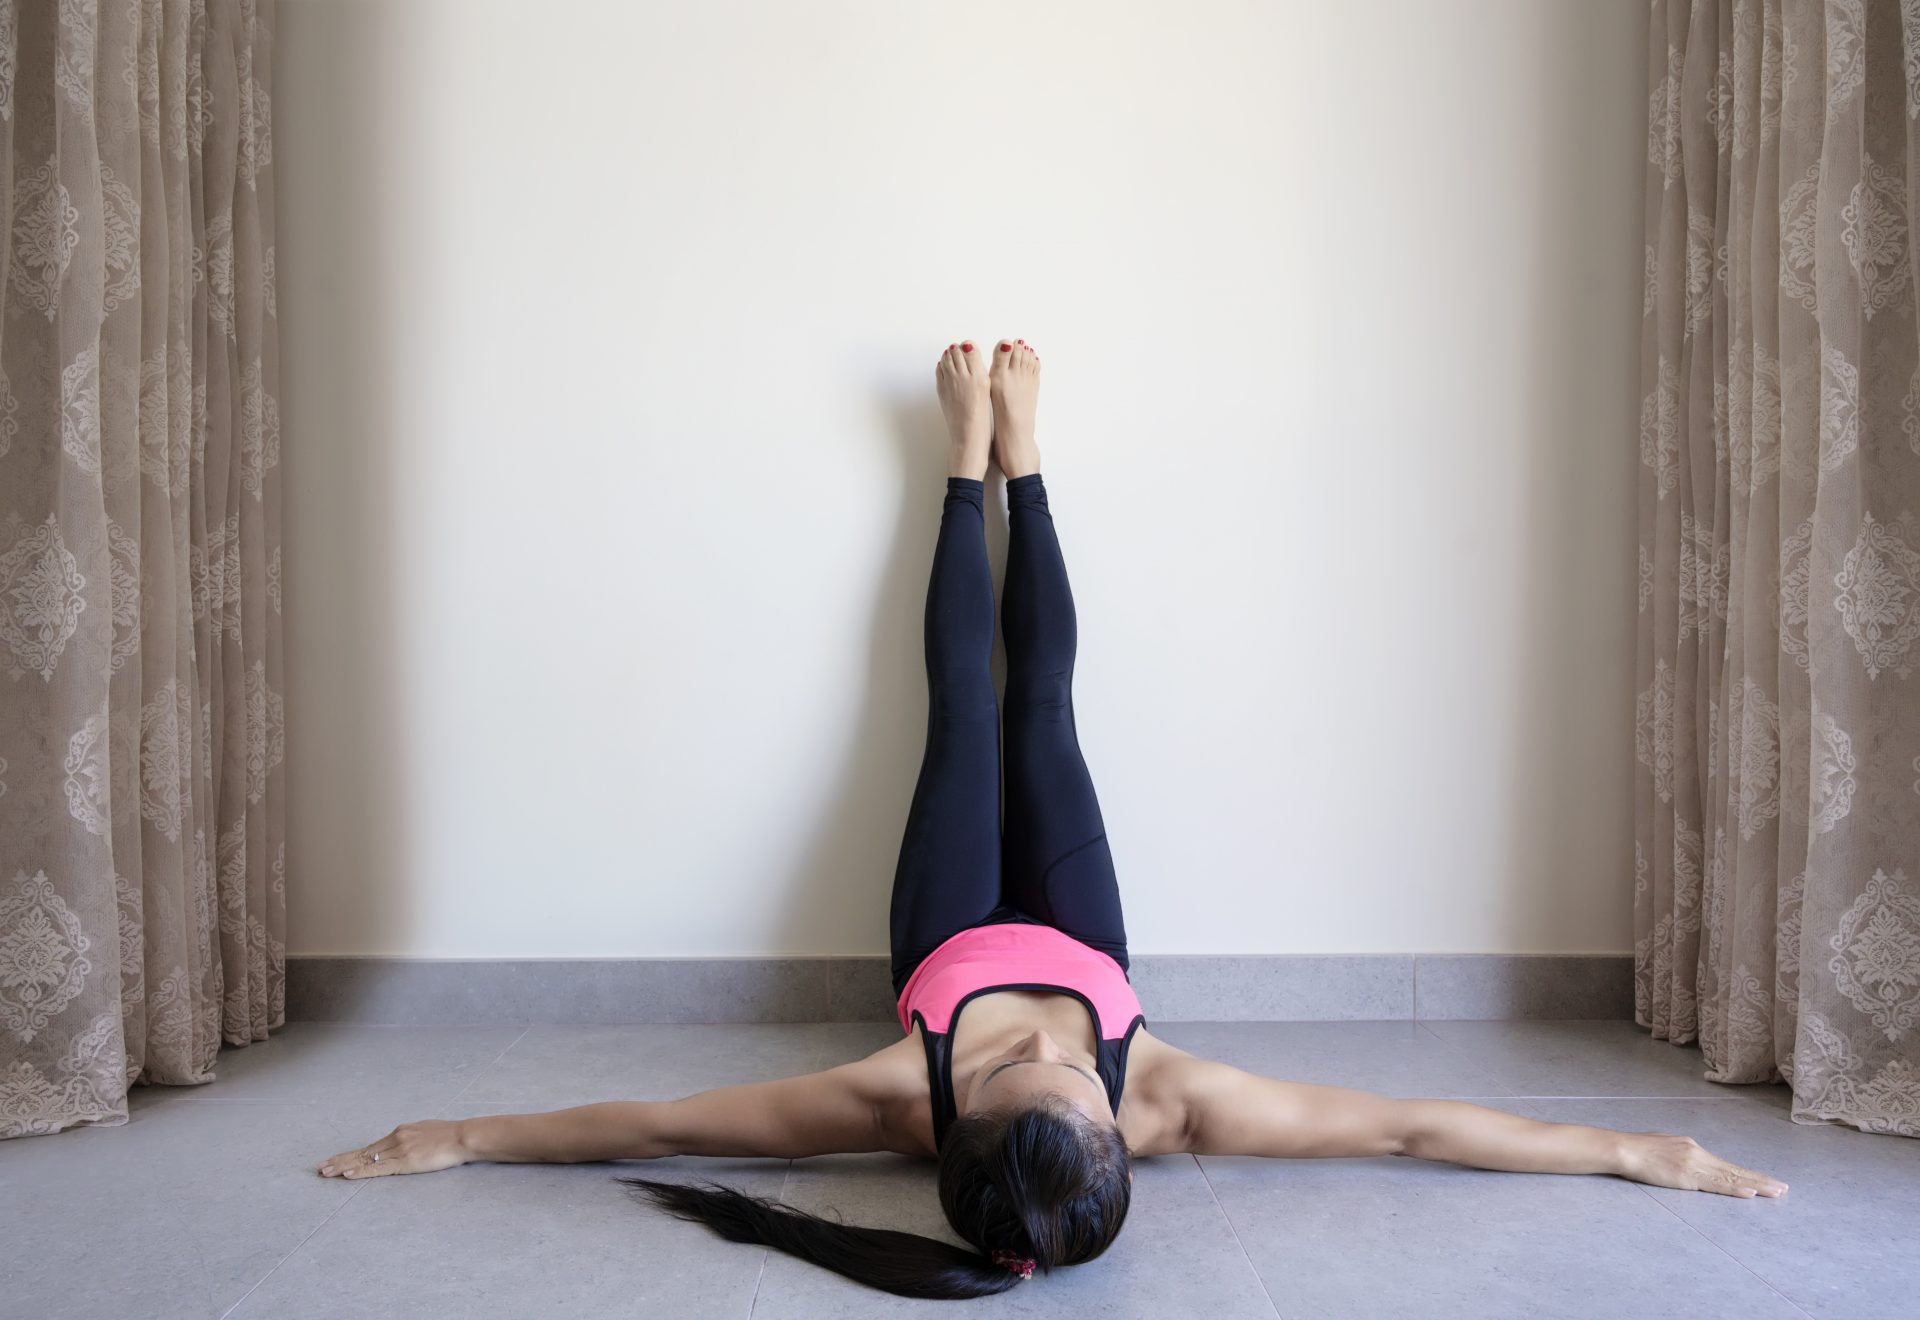 Reformer Vs Mat Pilates – Four-Point Kneeling Arm Exercise